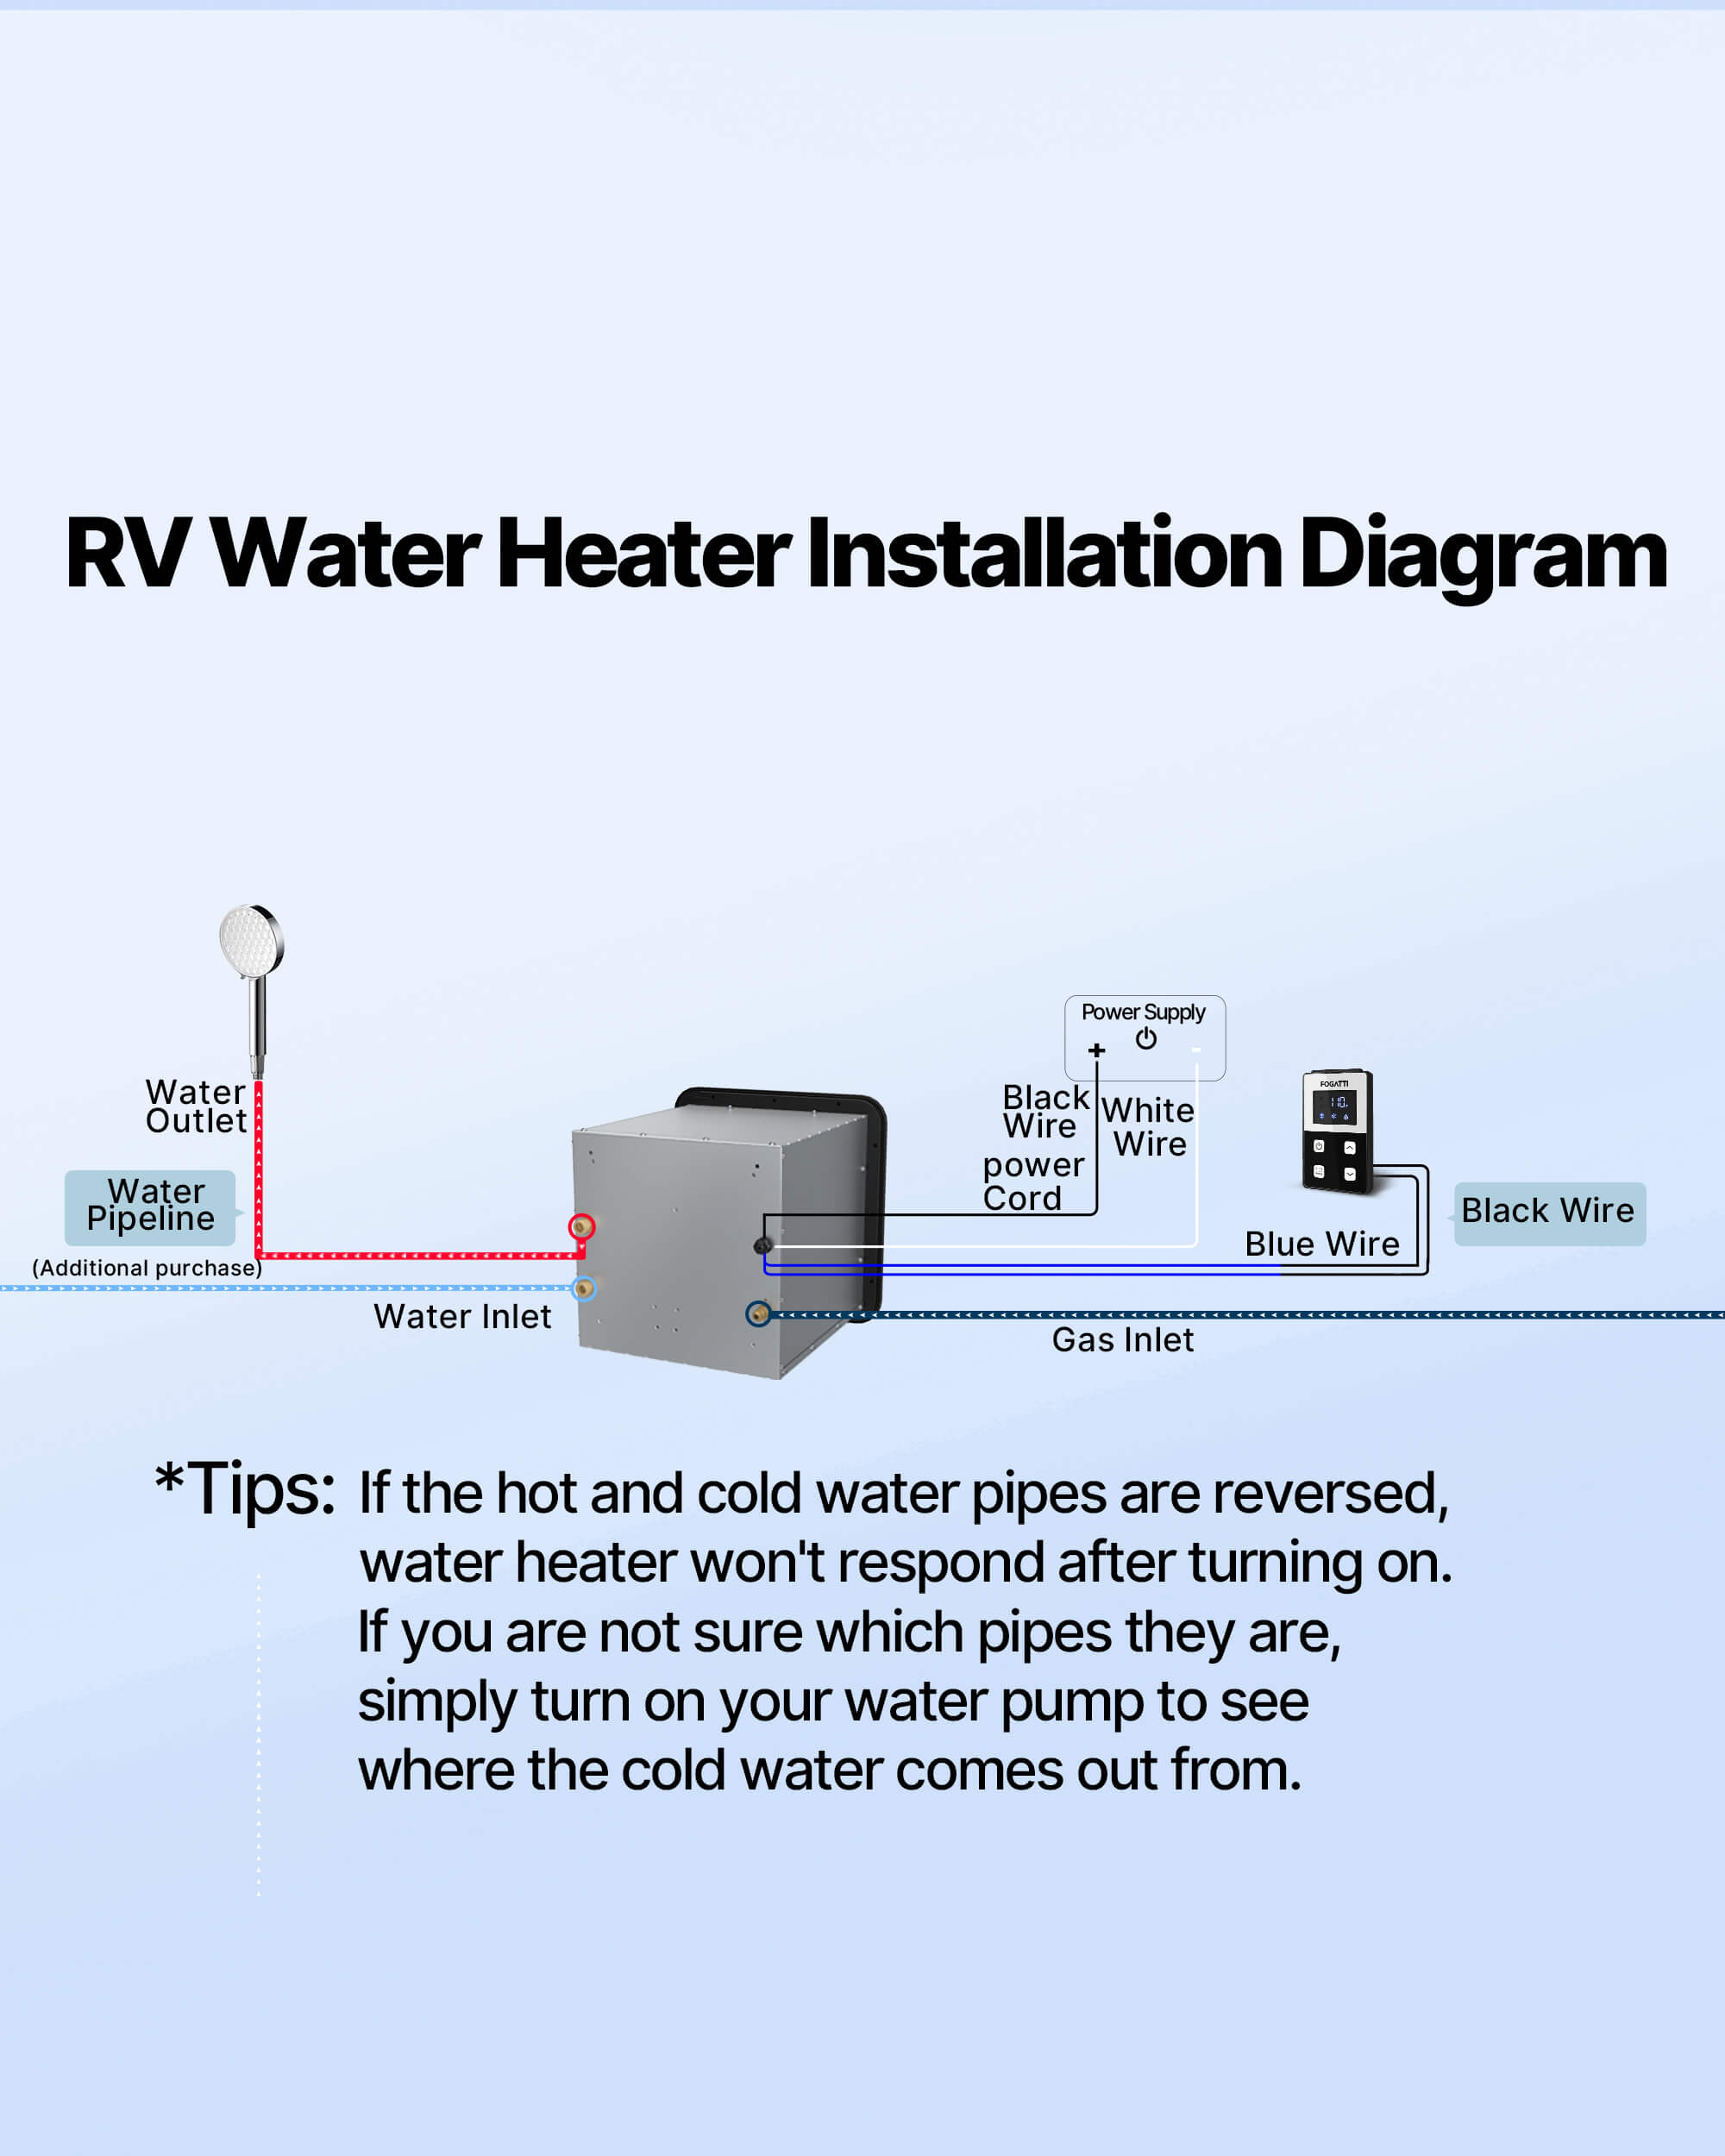 RV water heater installation diagram